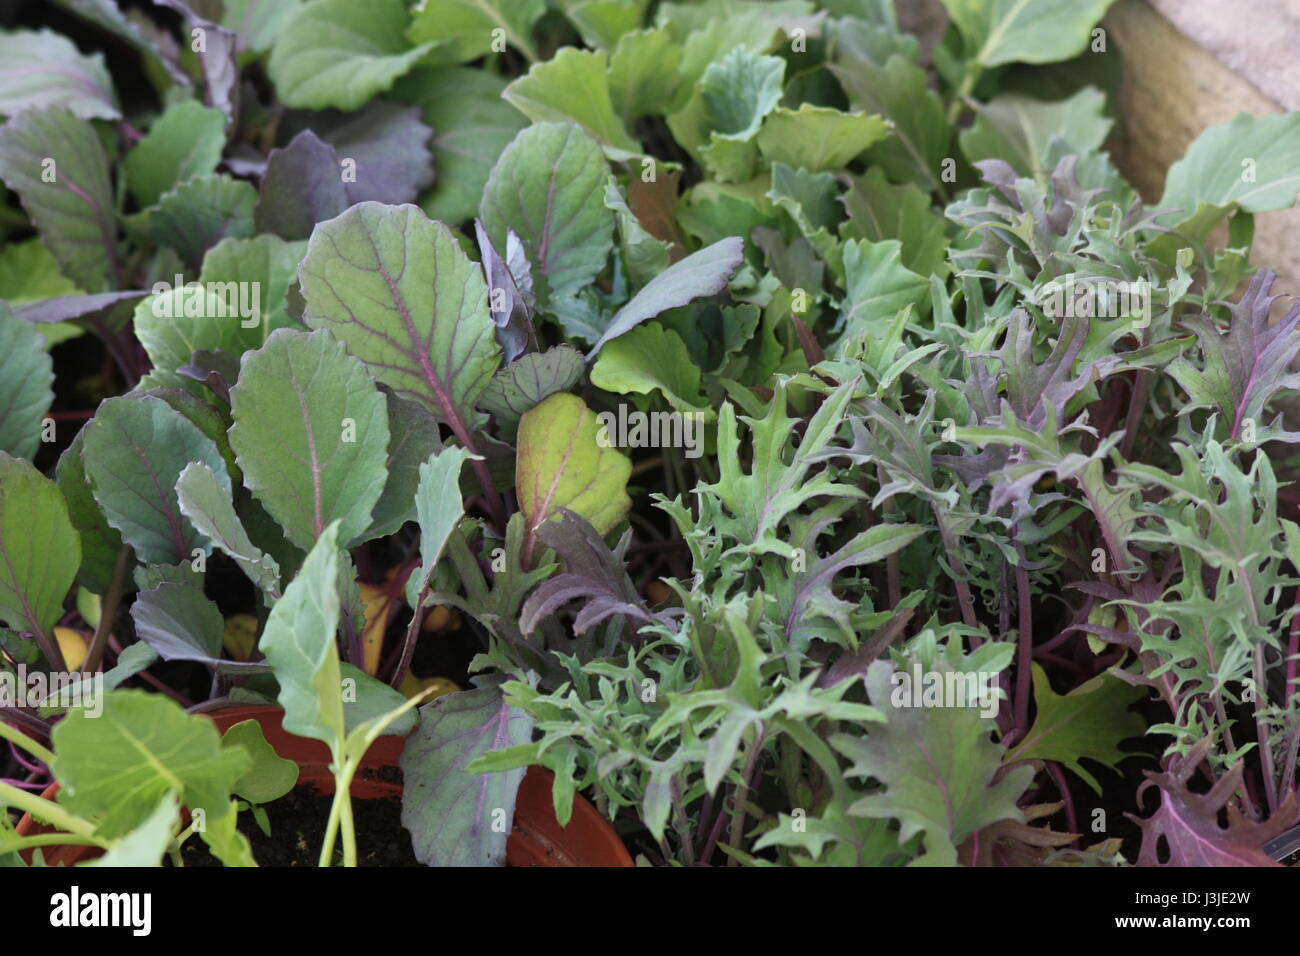 Plántulas de hortalizas listas para la siembra. Red Russian Kale final violeta plántulas jóvenes coles de Bruselas. Foto de stock